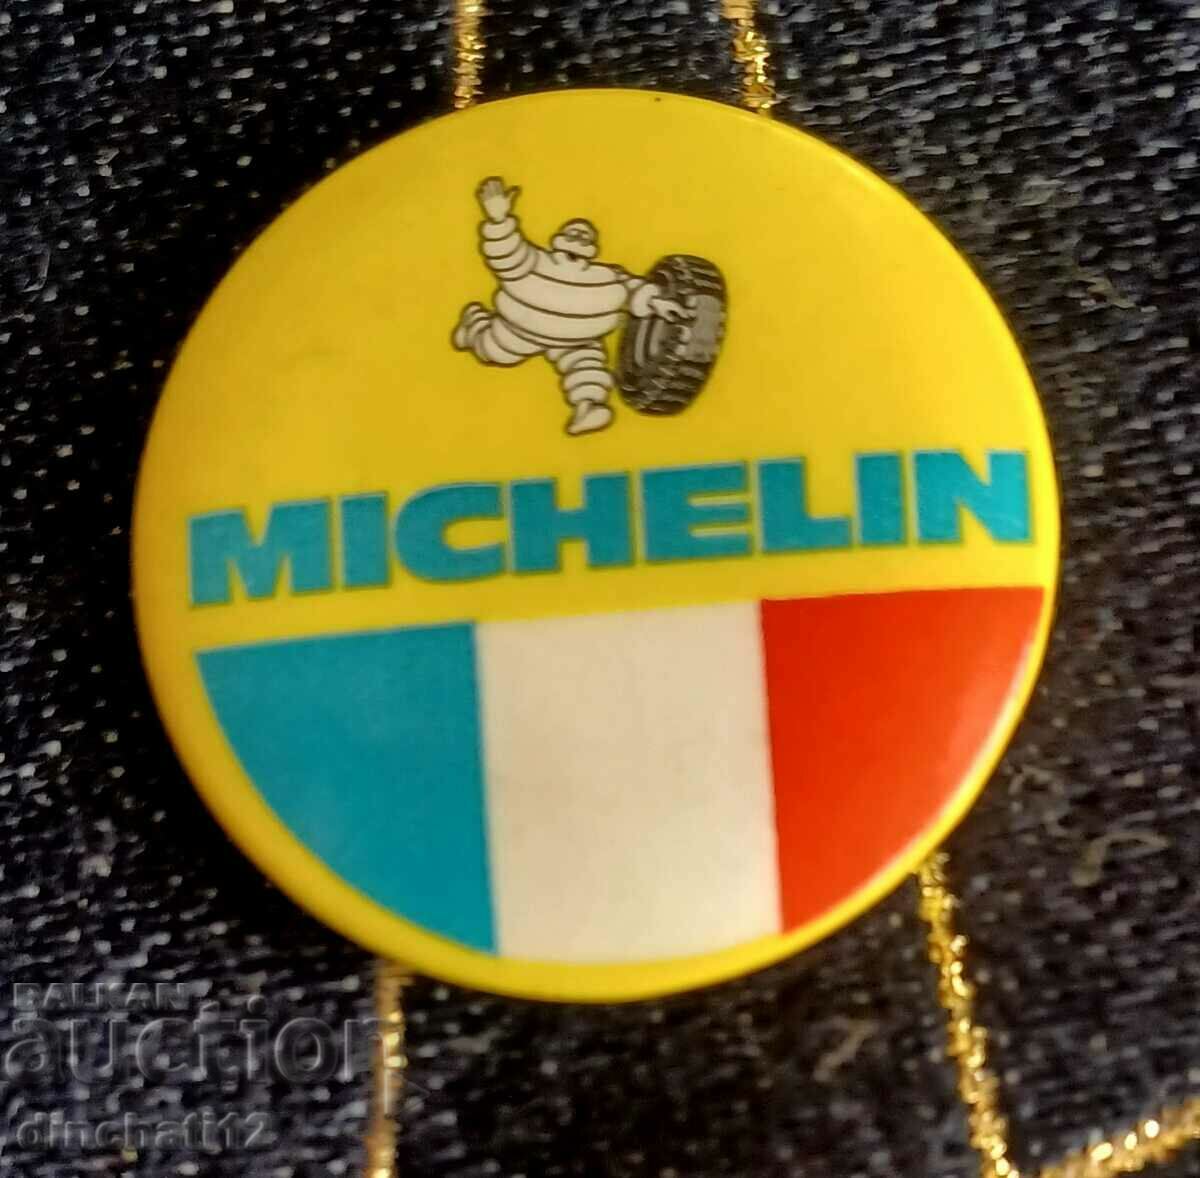 MICHELIN - CAR TIRES MICHELIN. Auto Moto